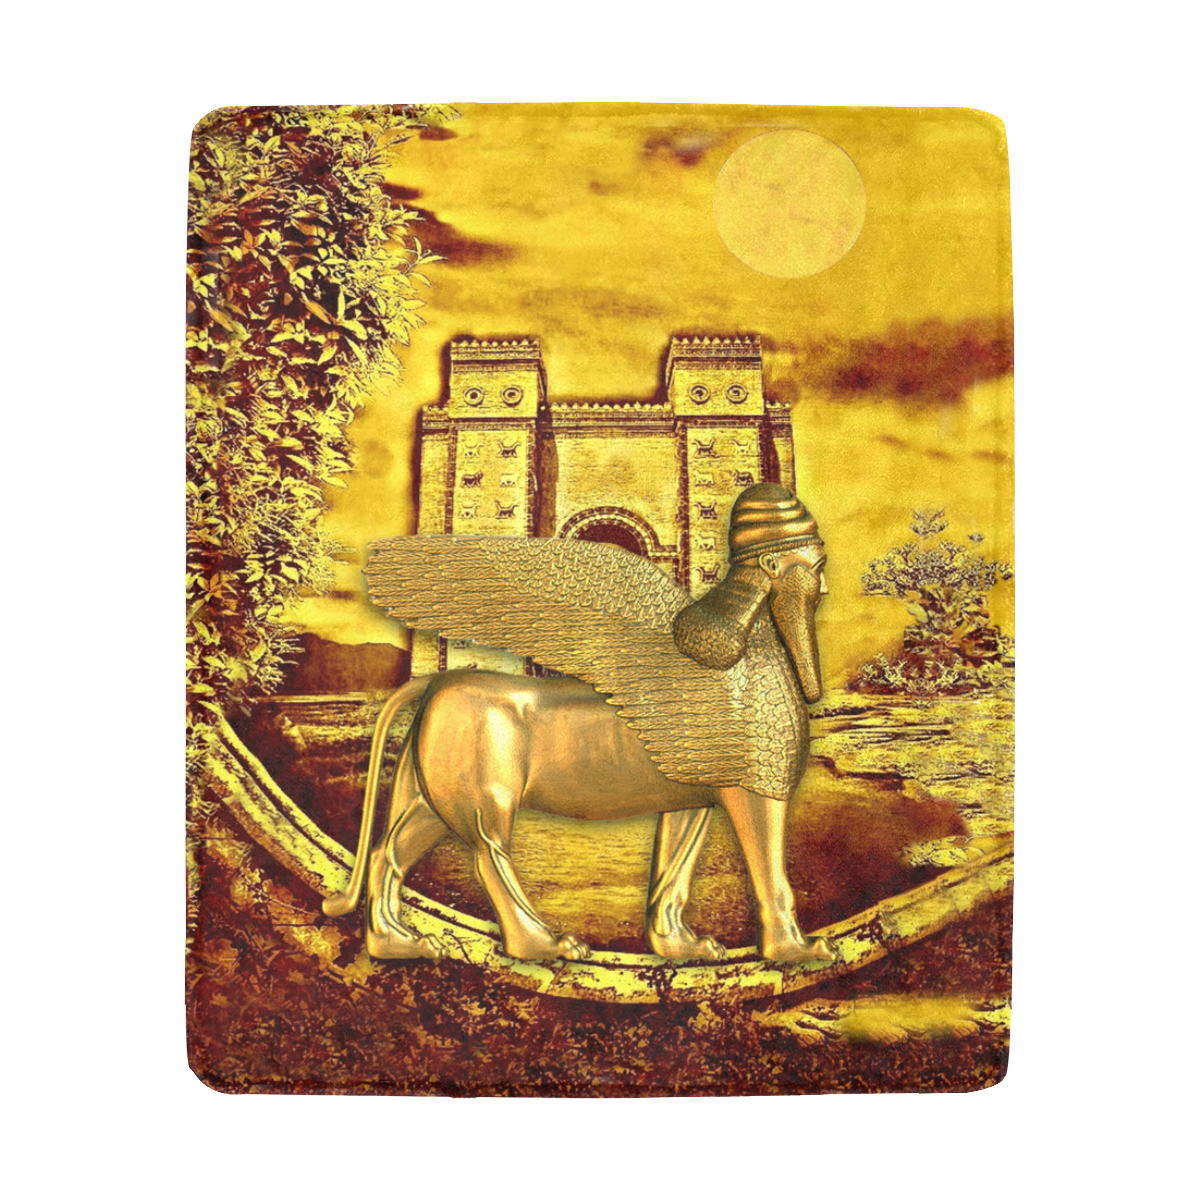 Golden Assyria Ultra-Soft Micro Fleece Blanket 50"x60"